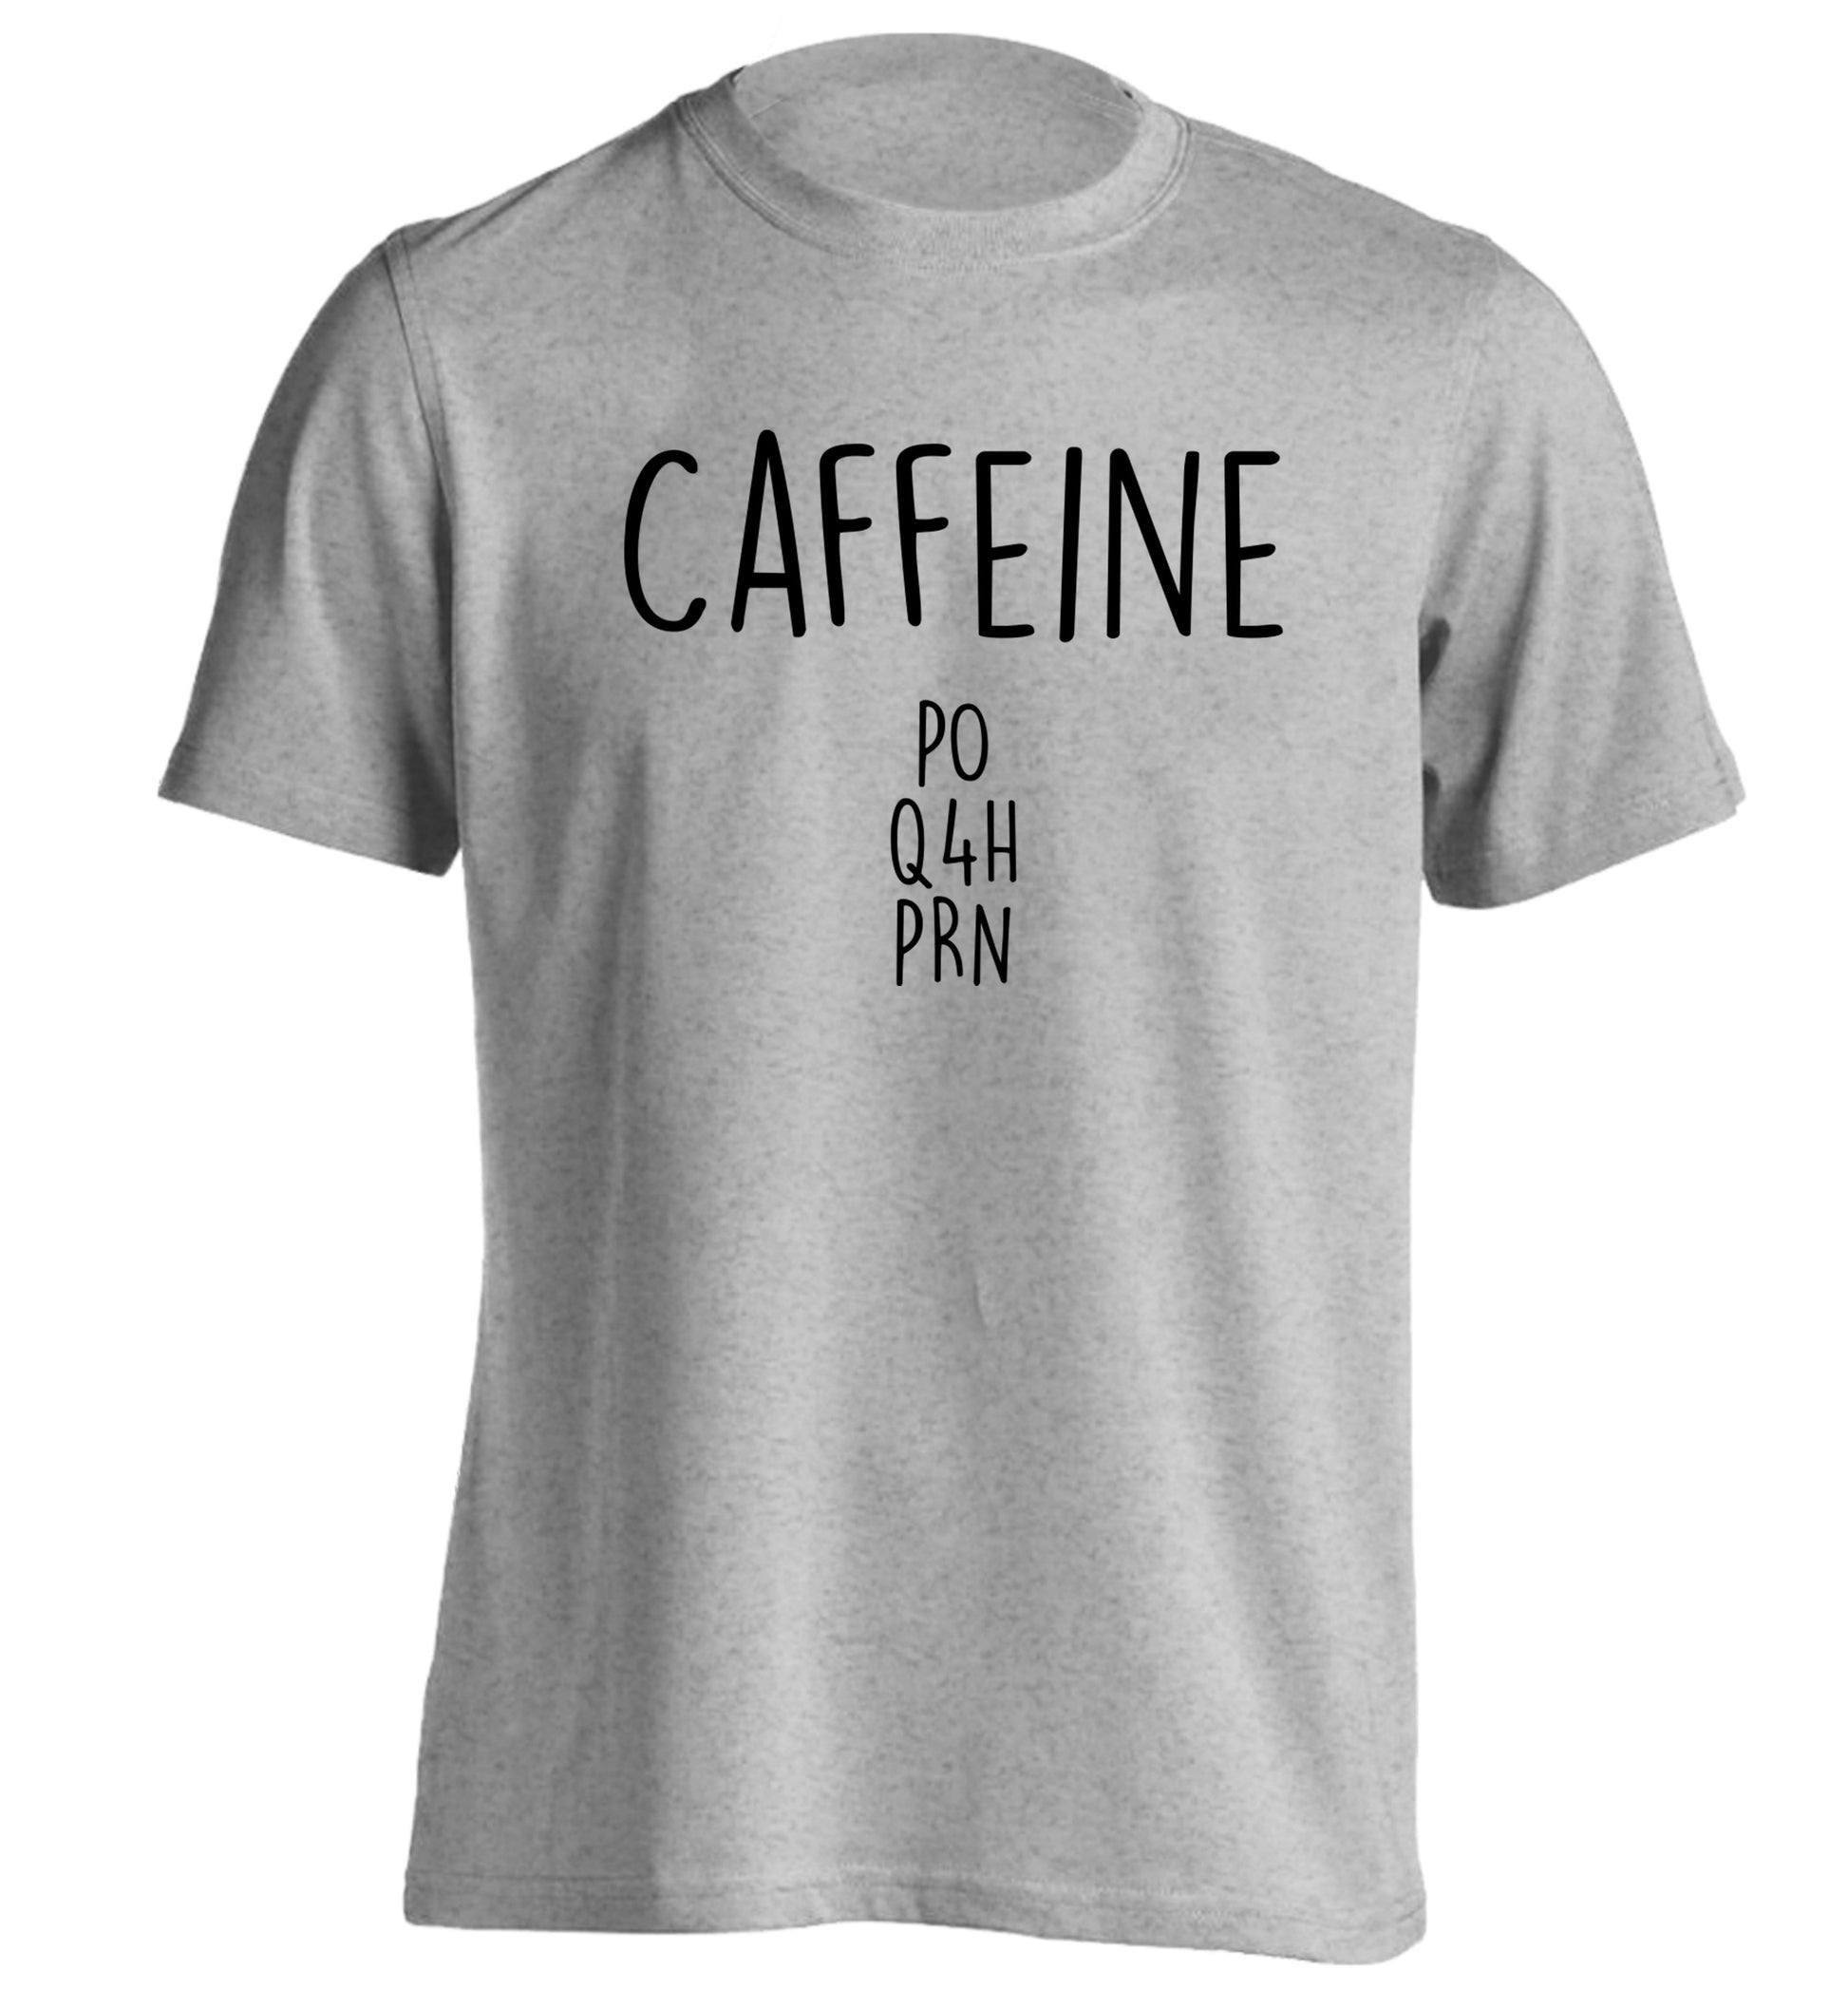 Caffeine PO Q4H PRN adults unisex grey Tshirt 2XL